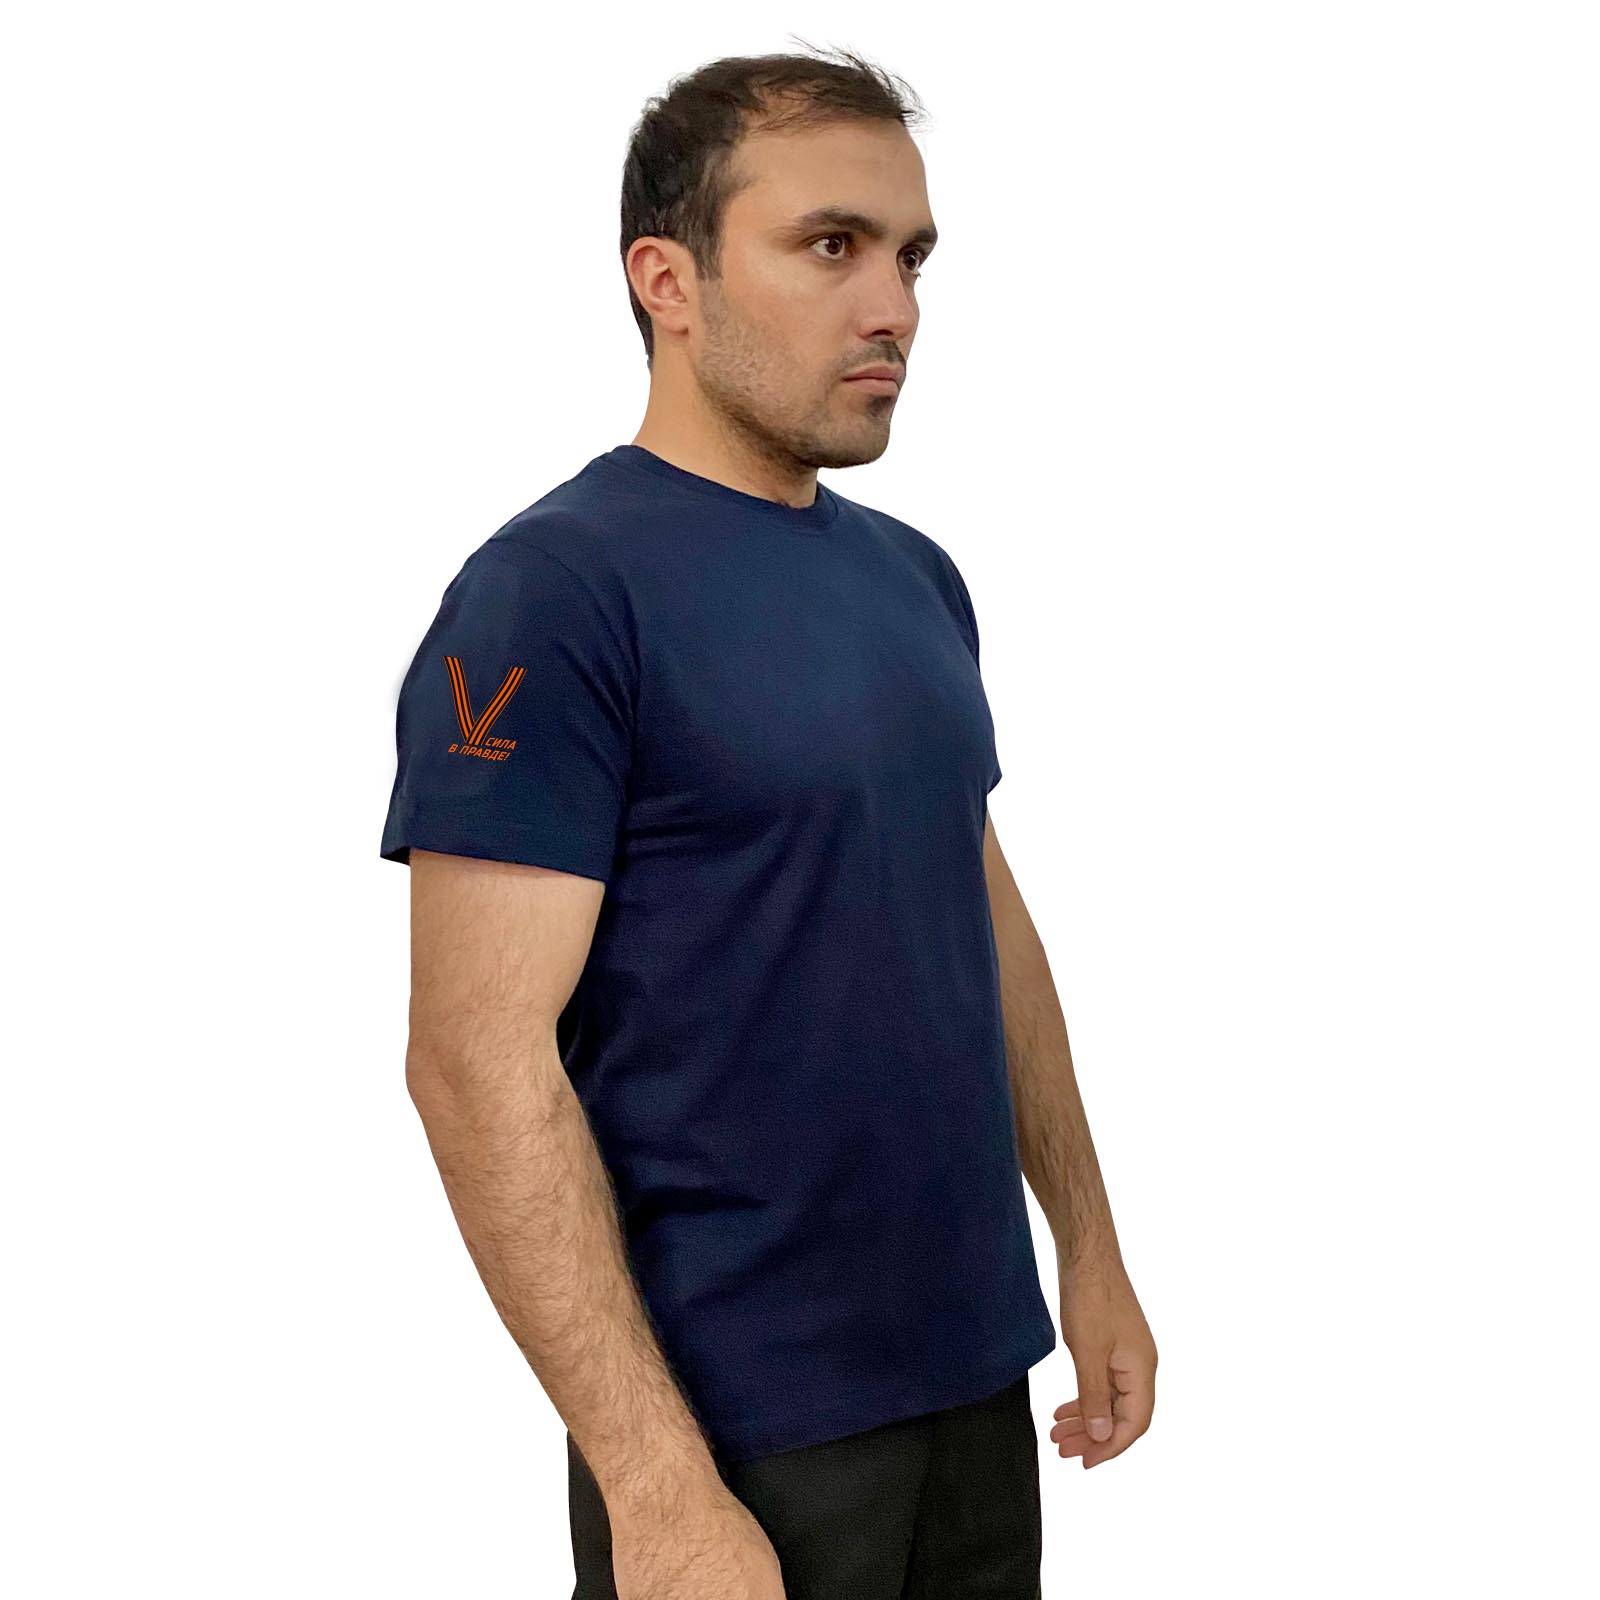 Тёмно-синяя футболка с гвардейским термотрансфером V на рукаве